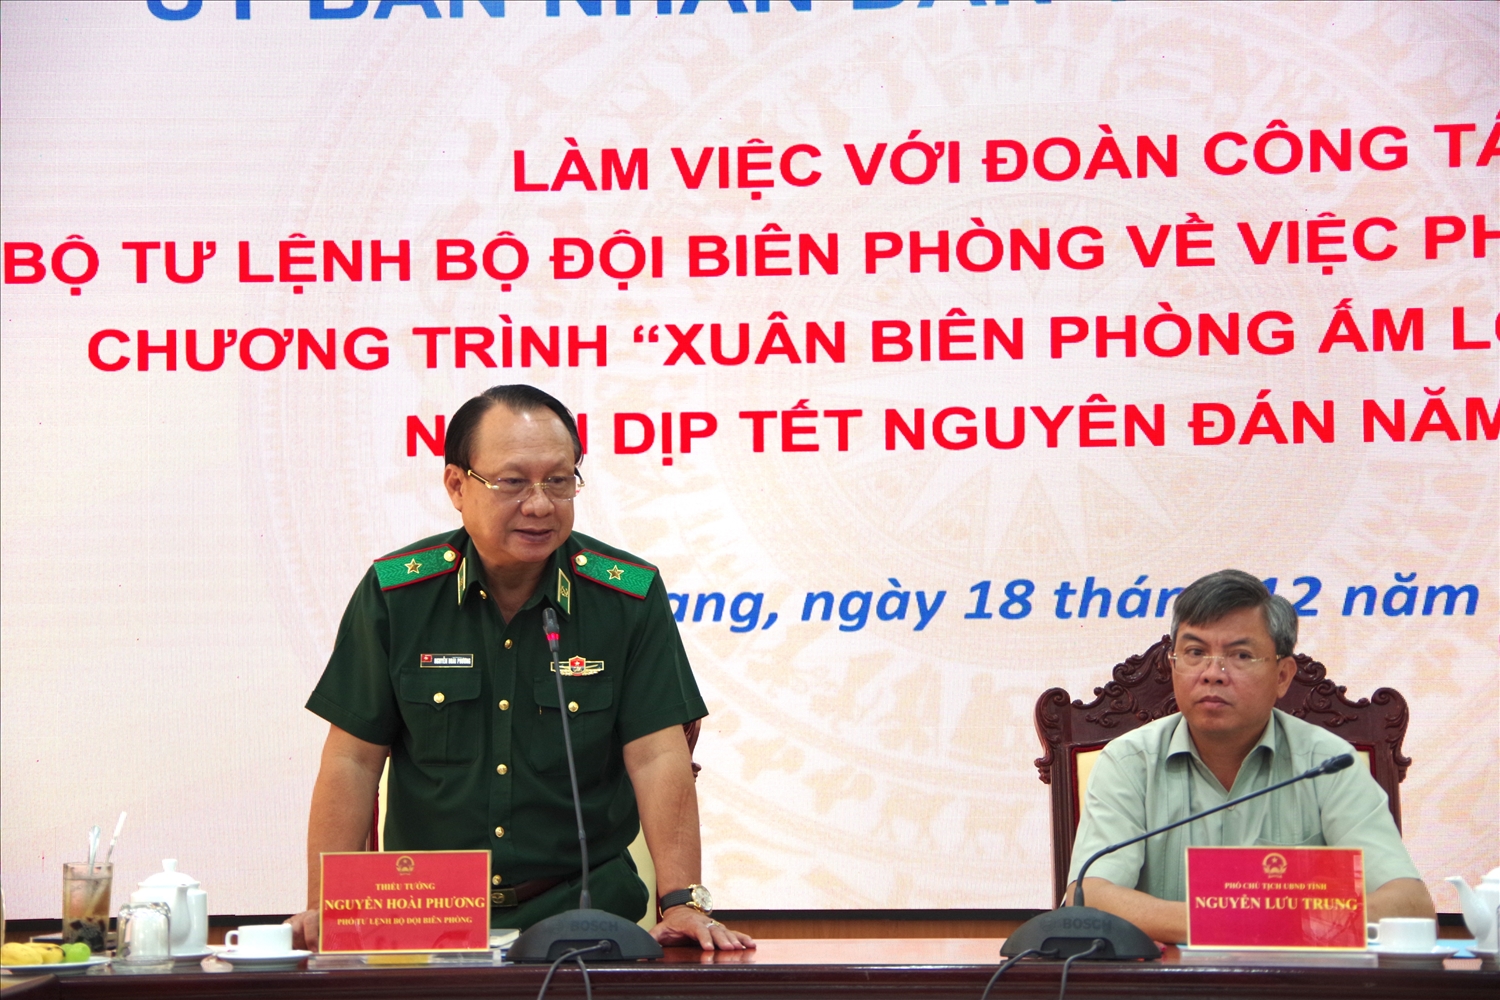 Thiếu tướng Nguyễn Hoài Phương, Phó Tư lệnh Bộ Tư lệnh Bộ đội Biên phòng phát biểu tại buổi làm việc